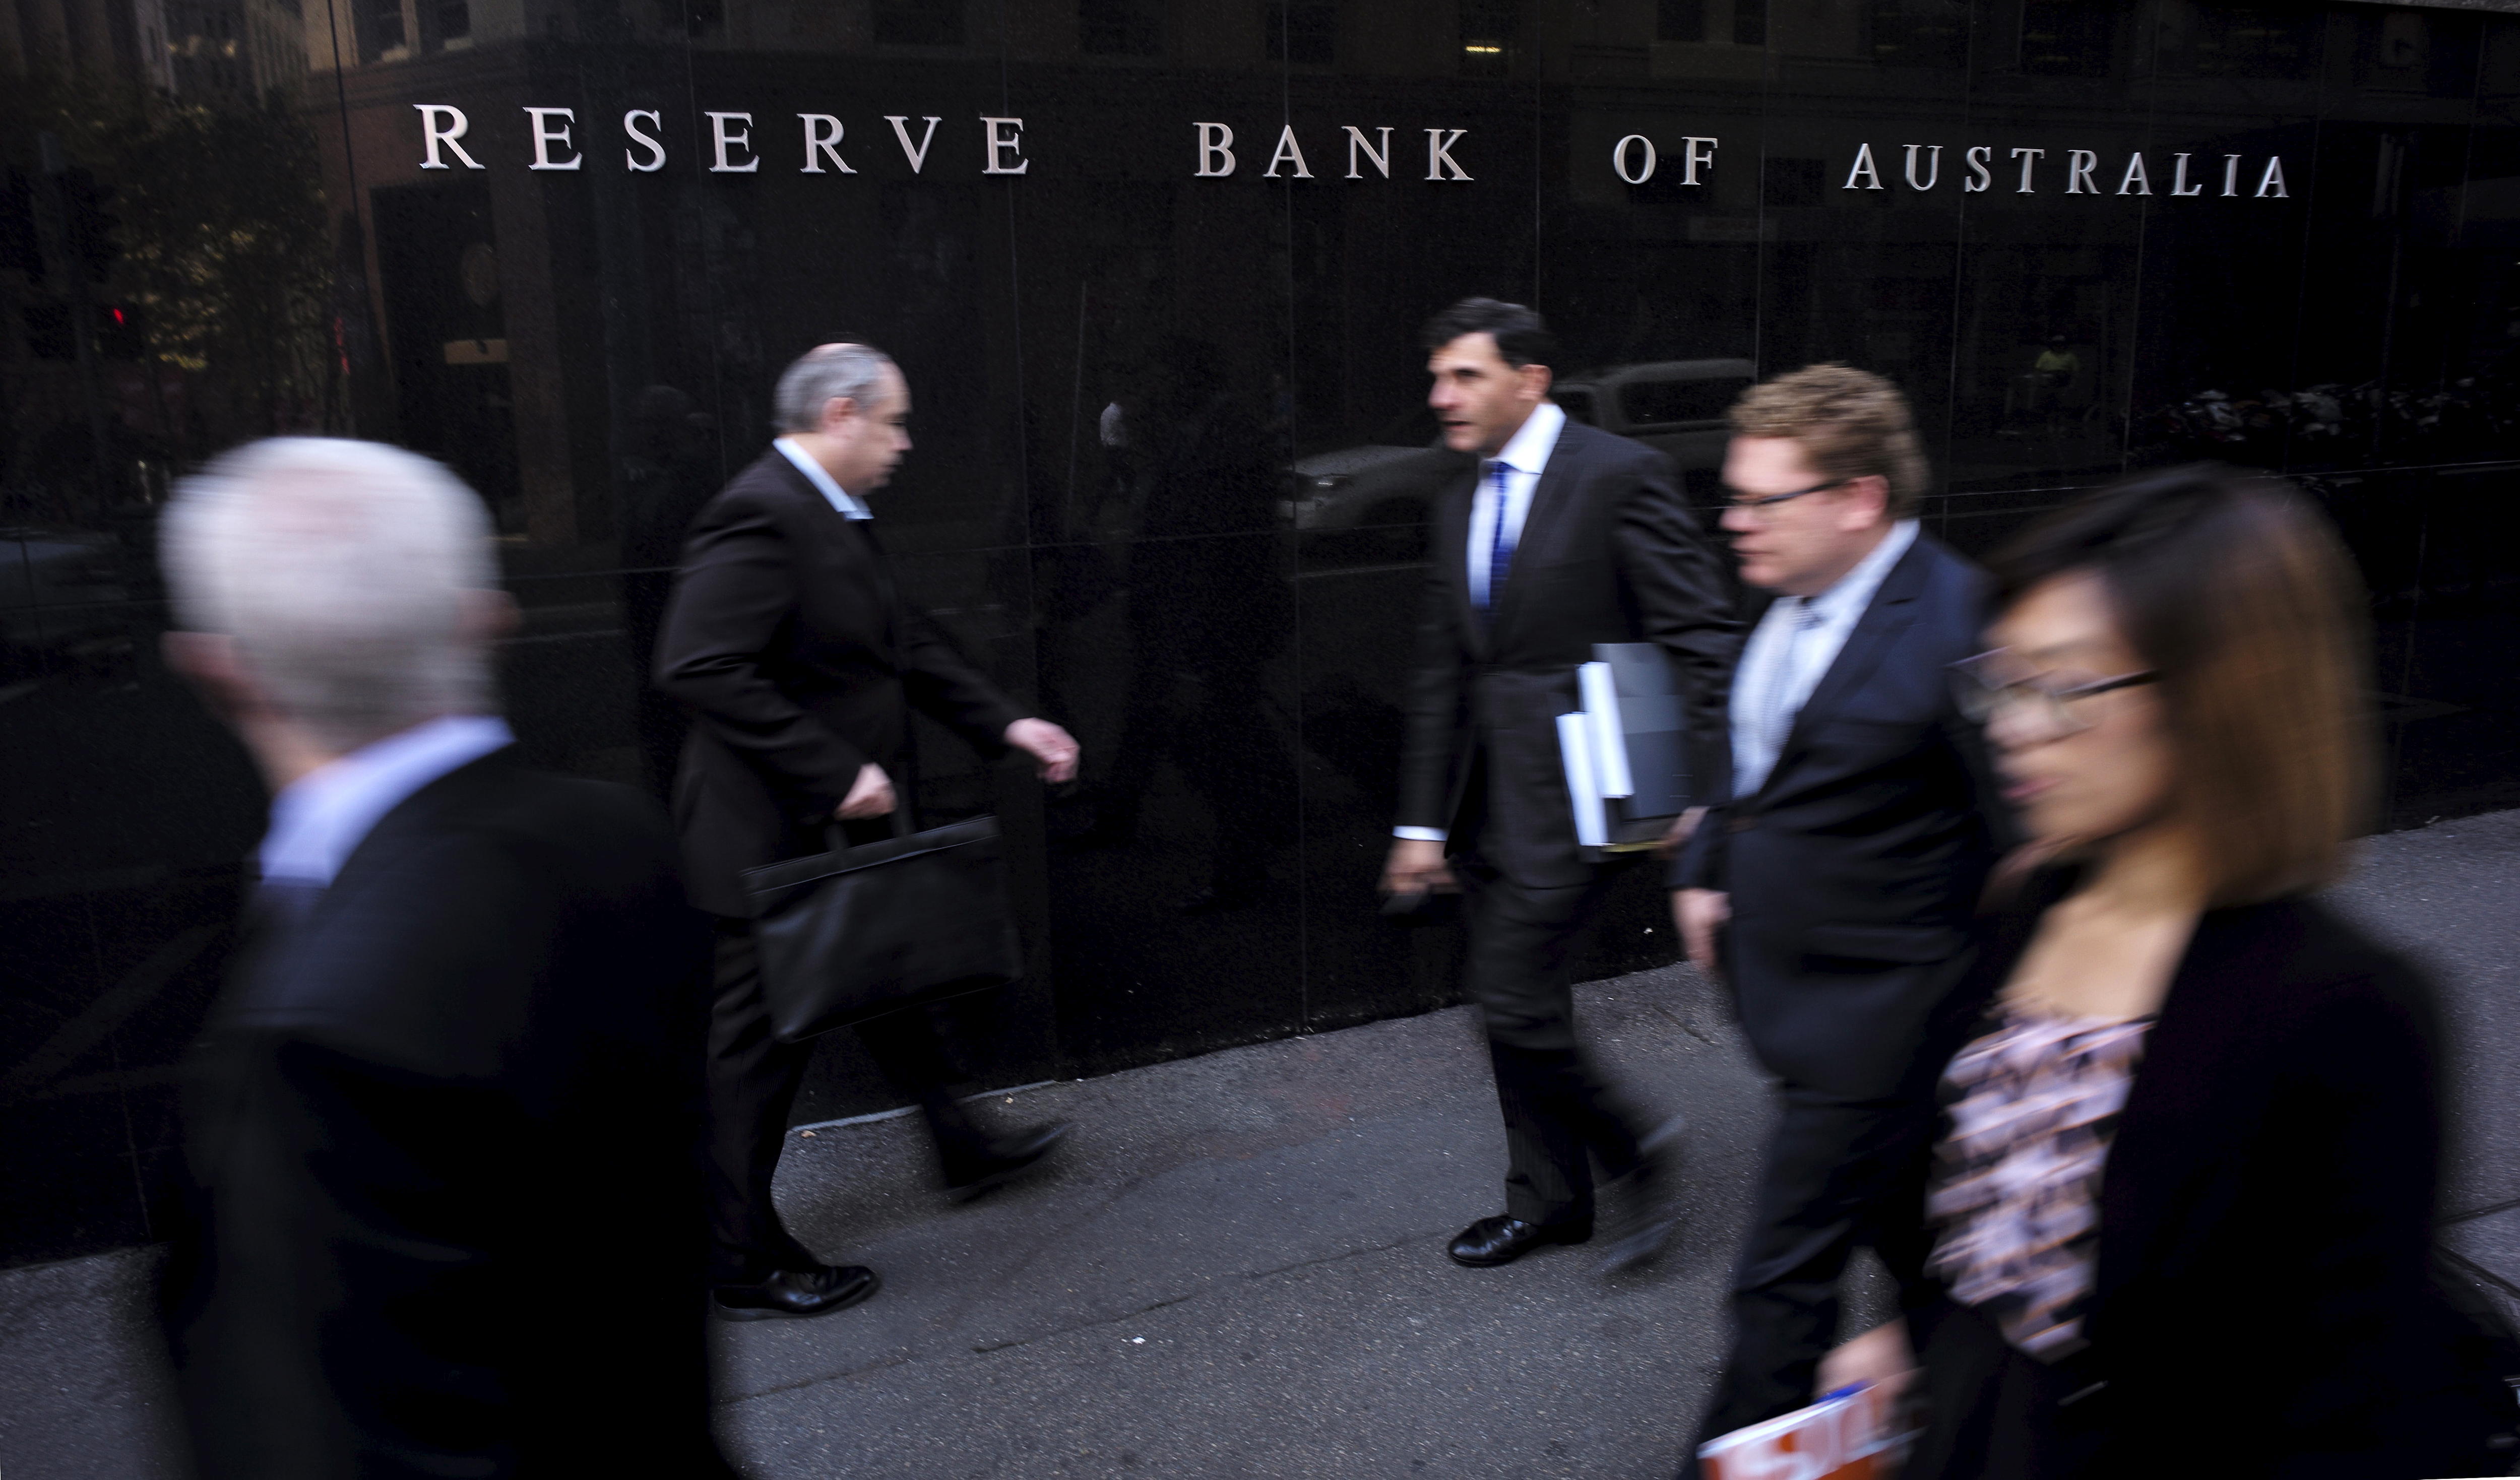 四男一女，都穿着西装，走在澳大利亚储备银行前澳大利亚在悉尼建设。” class=